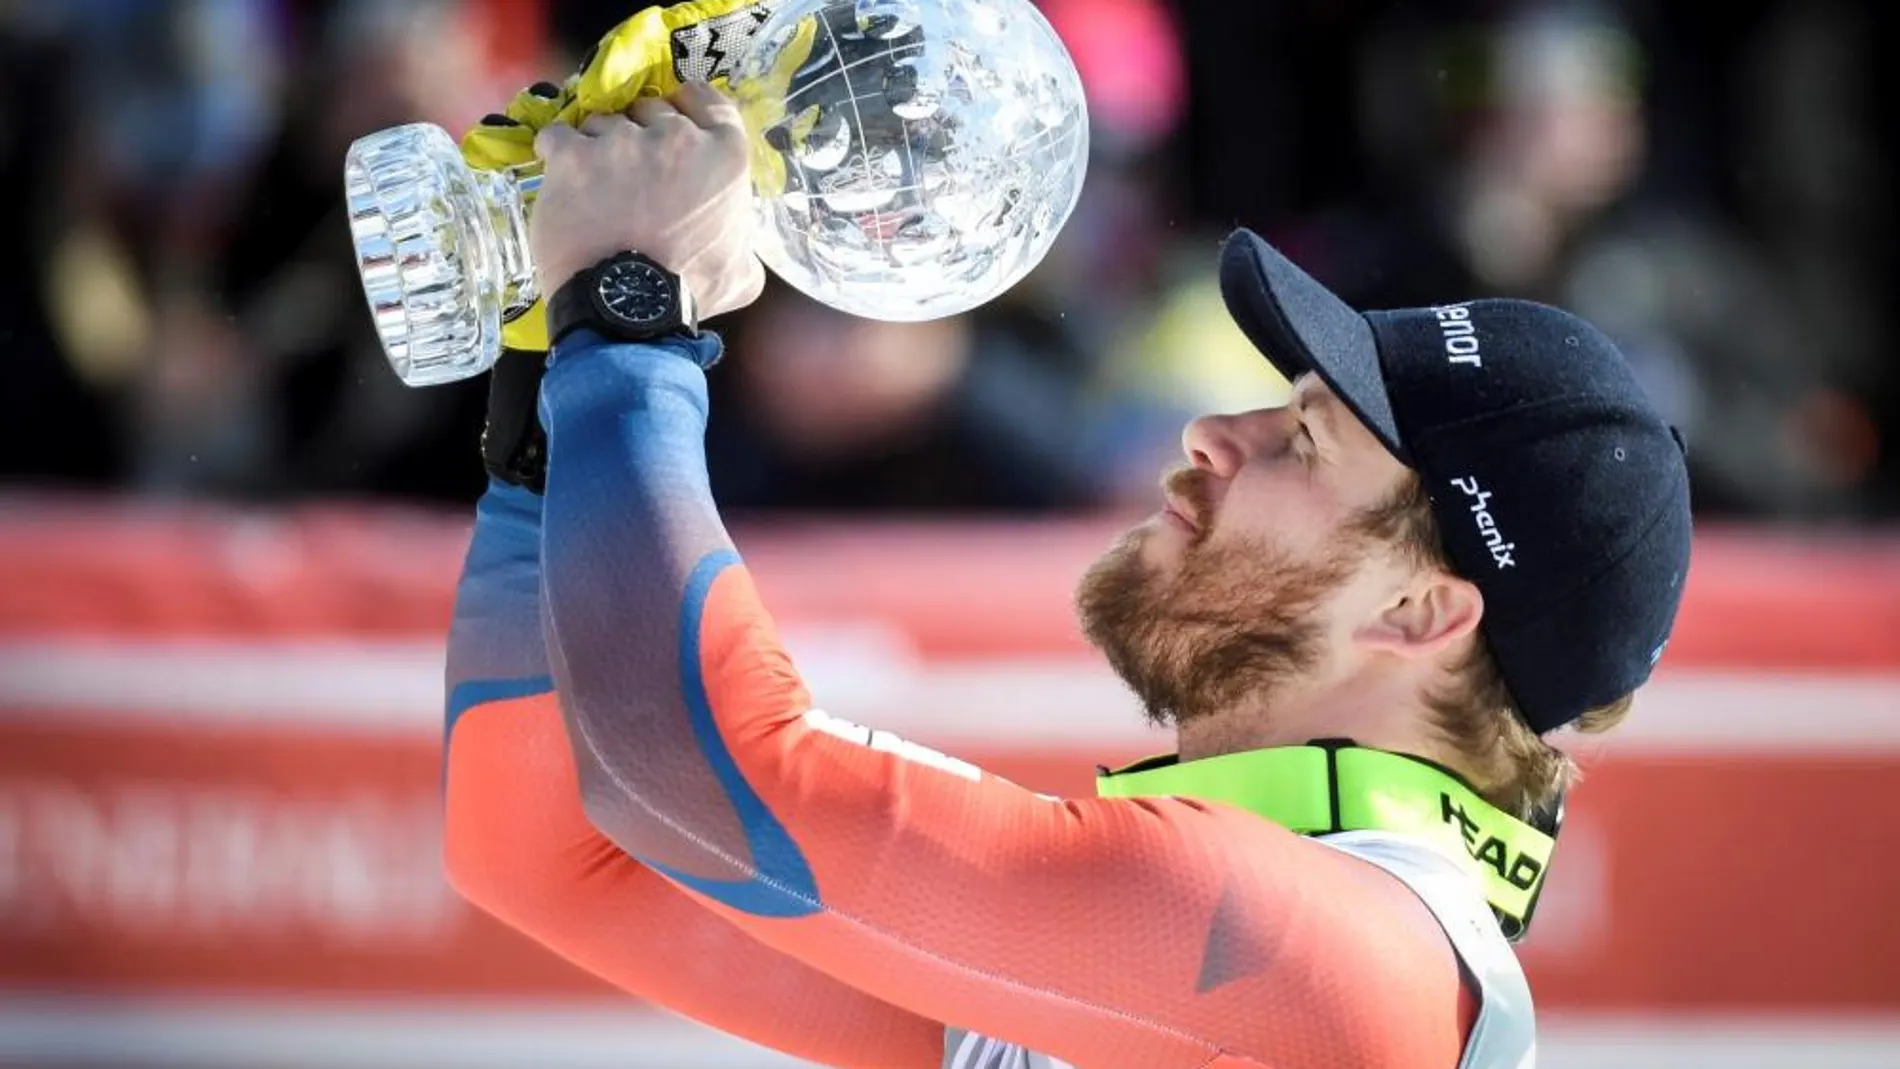 El noruego Kjetil Jansrud revalida el título en el supergigante de la Copa del Mundo de esquí alpino, en Are, Suecia